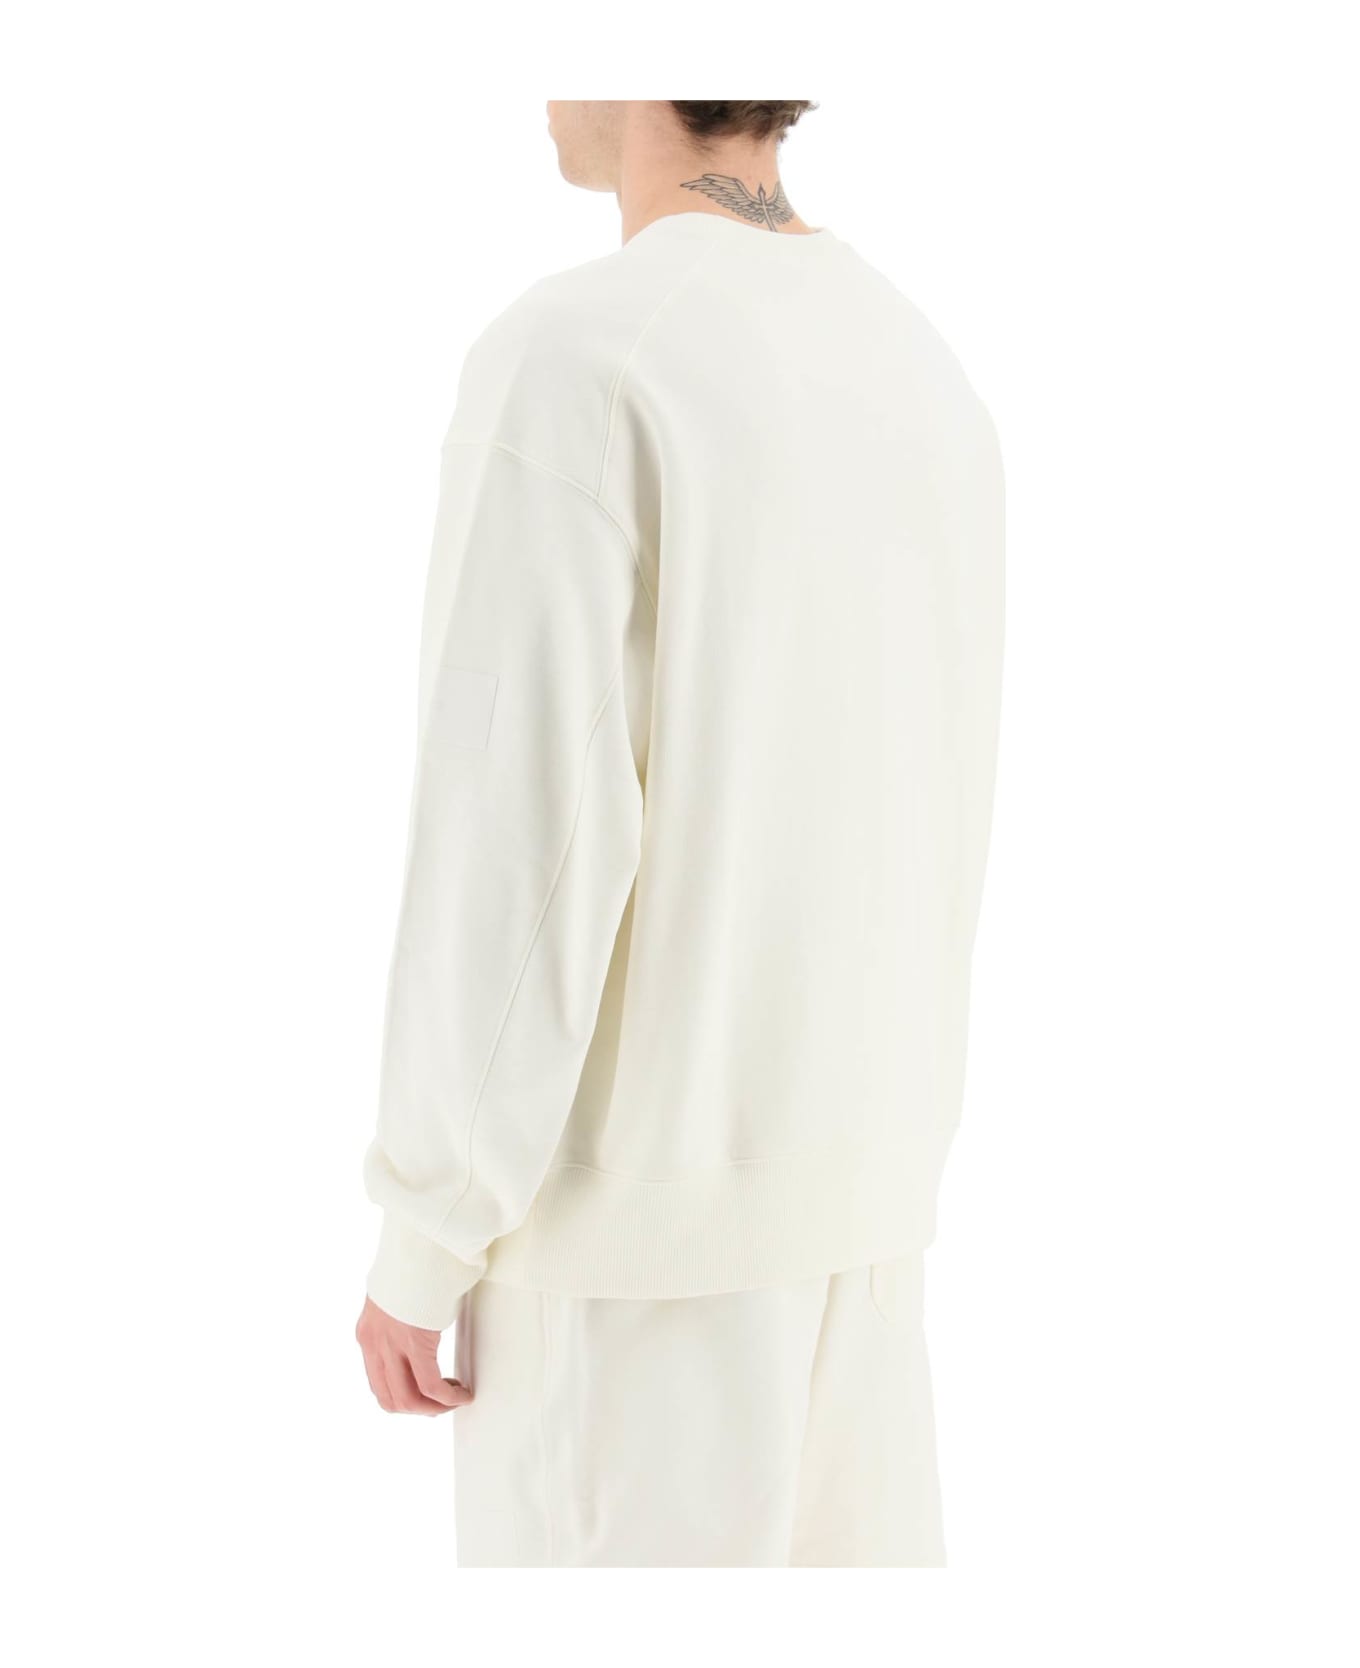 Y-3 Crew Sweatshirt In White Cotton - OFFWHITE フリース